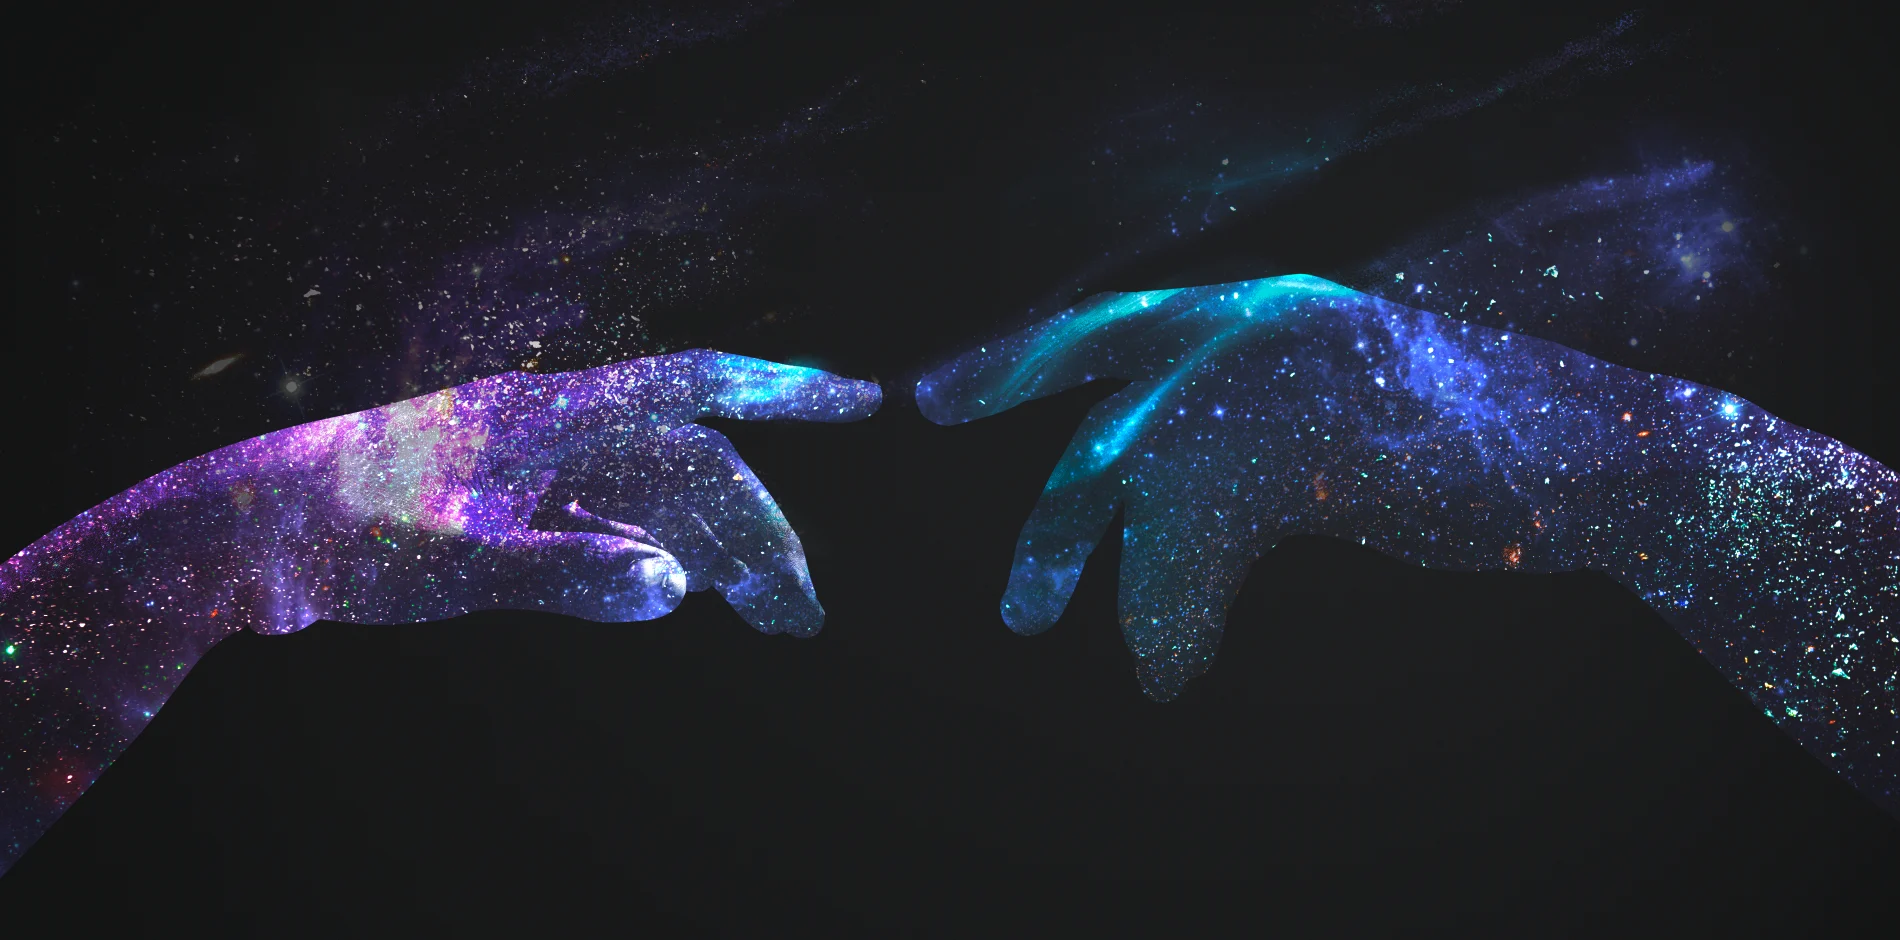 图片展示了两只手指尖相对，它们被星系般的光芒包围，给人以宇宙和神秘的联想，颇有创意和艺术美感。